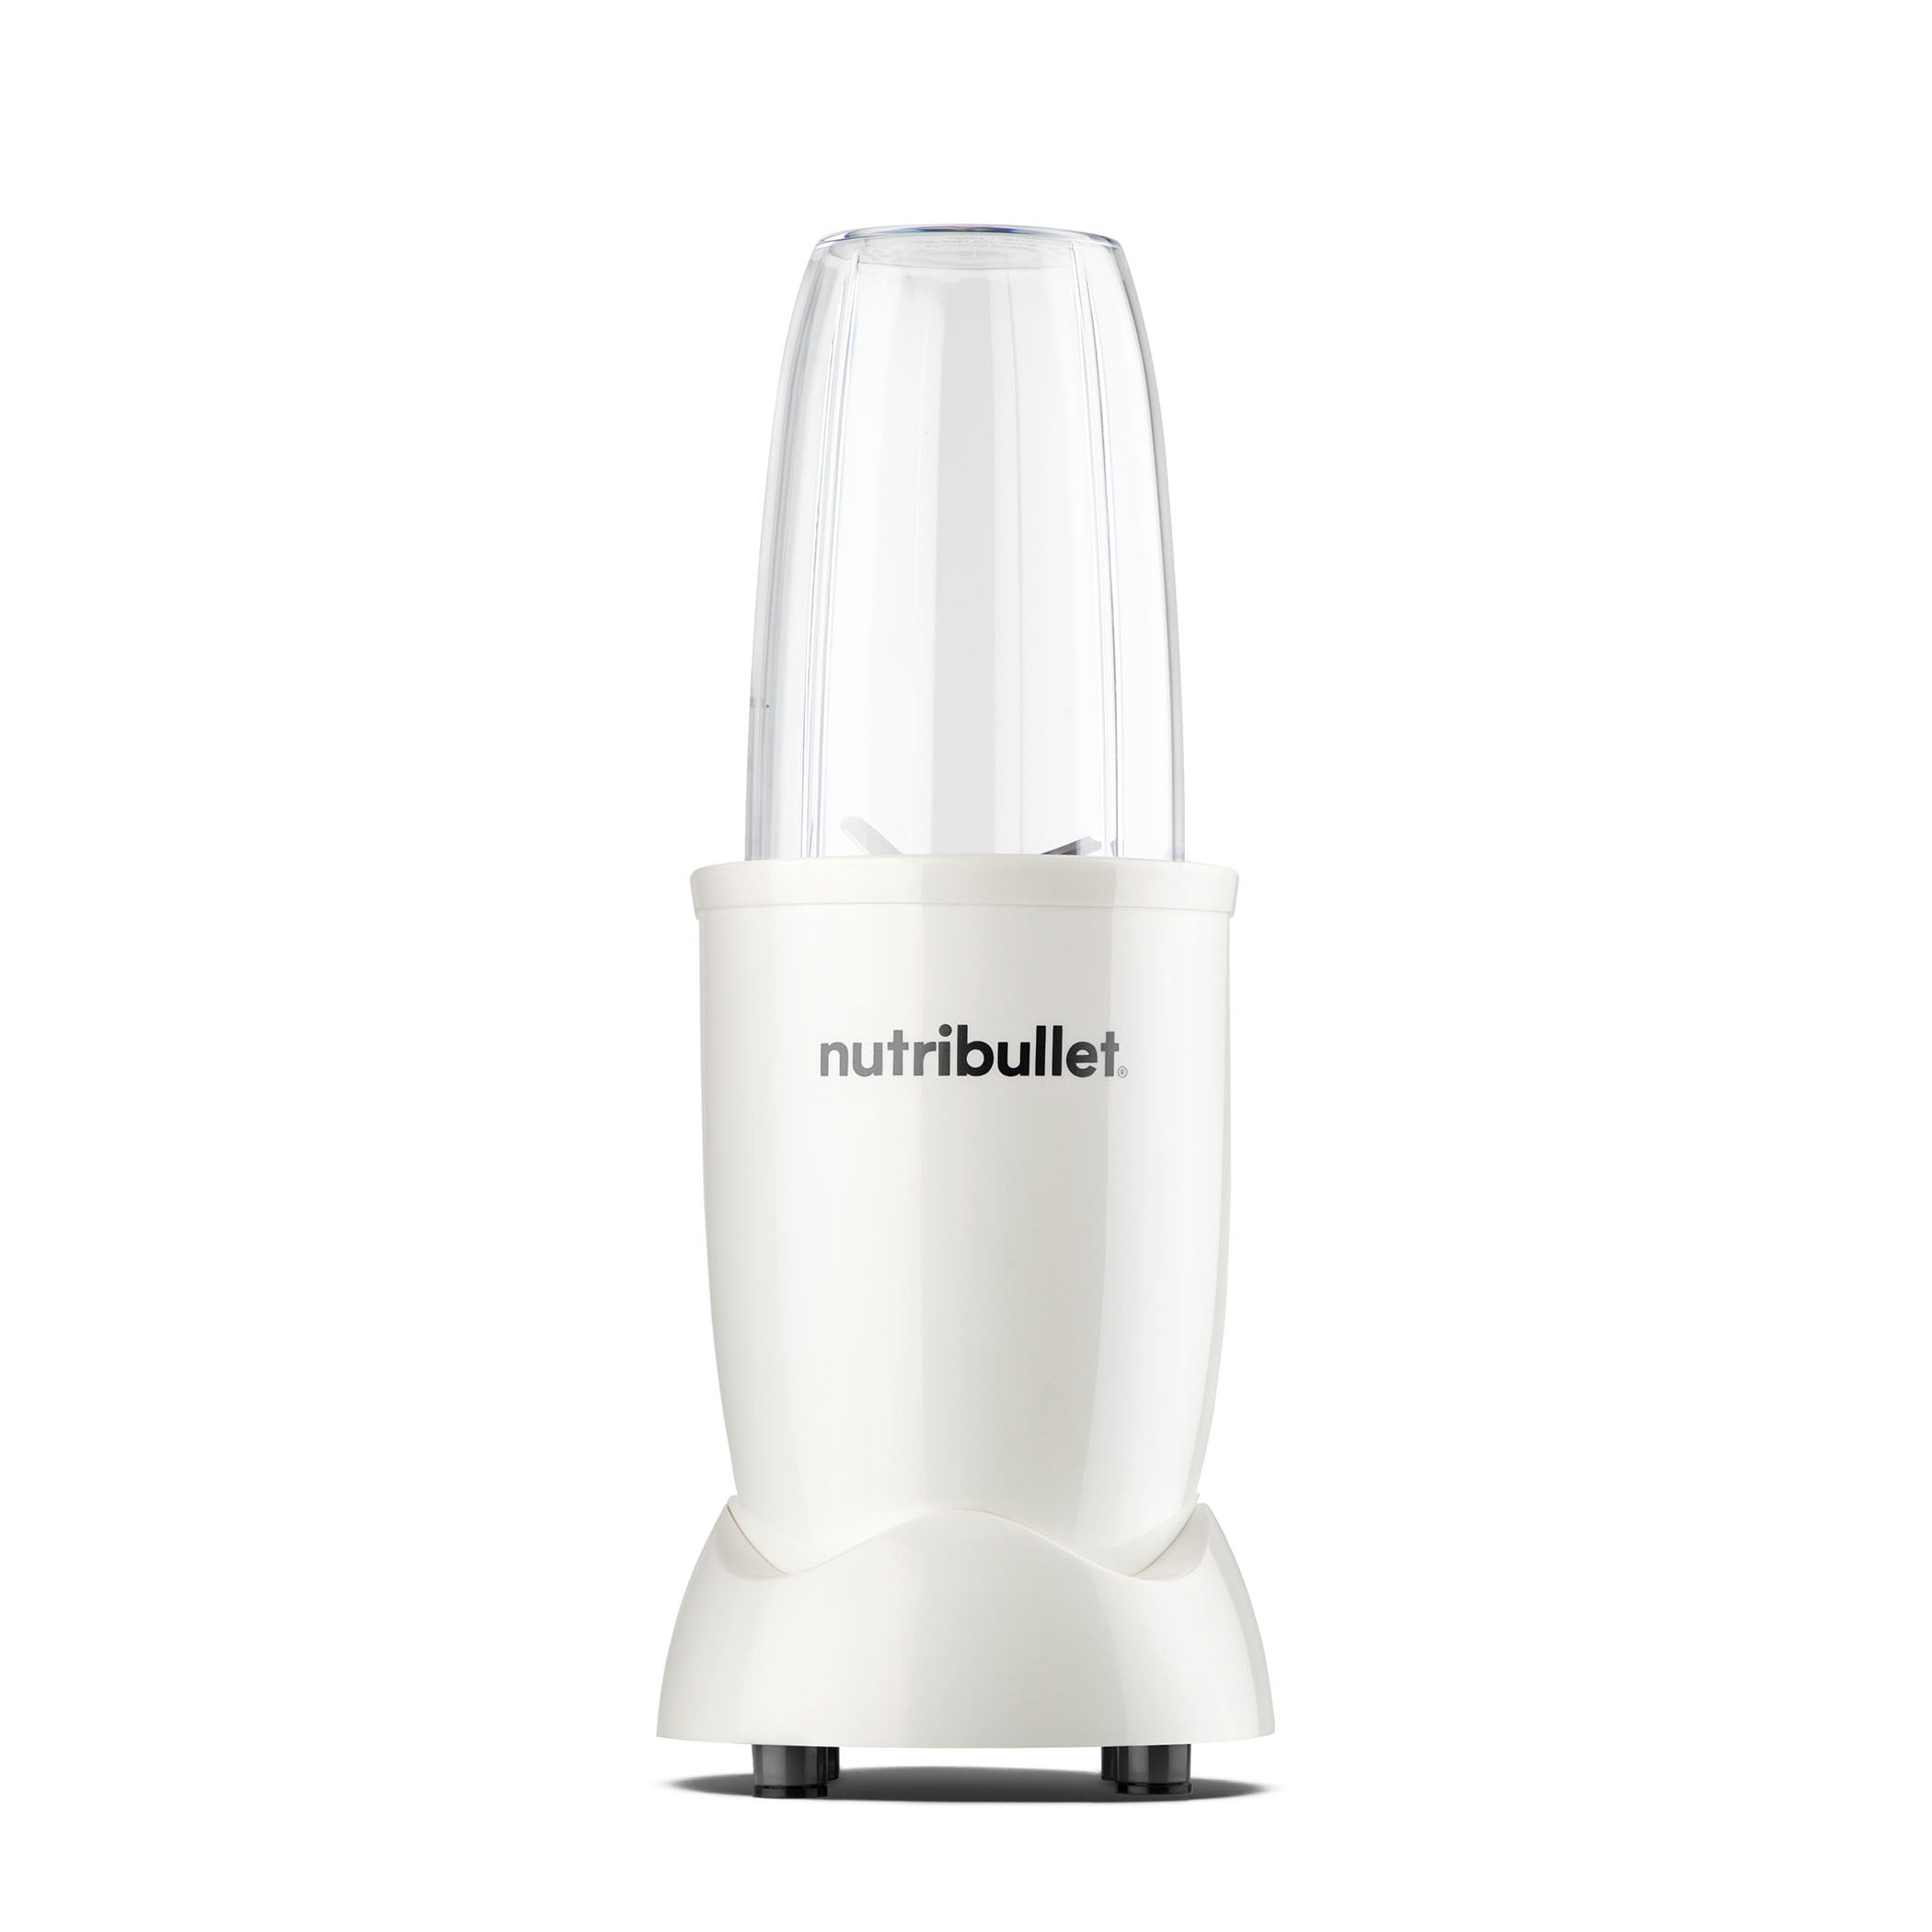 Nutribullet 500 Series 500 watt White & Gold Mixer Blender Brand